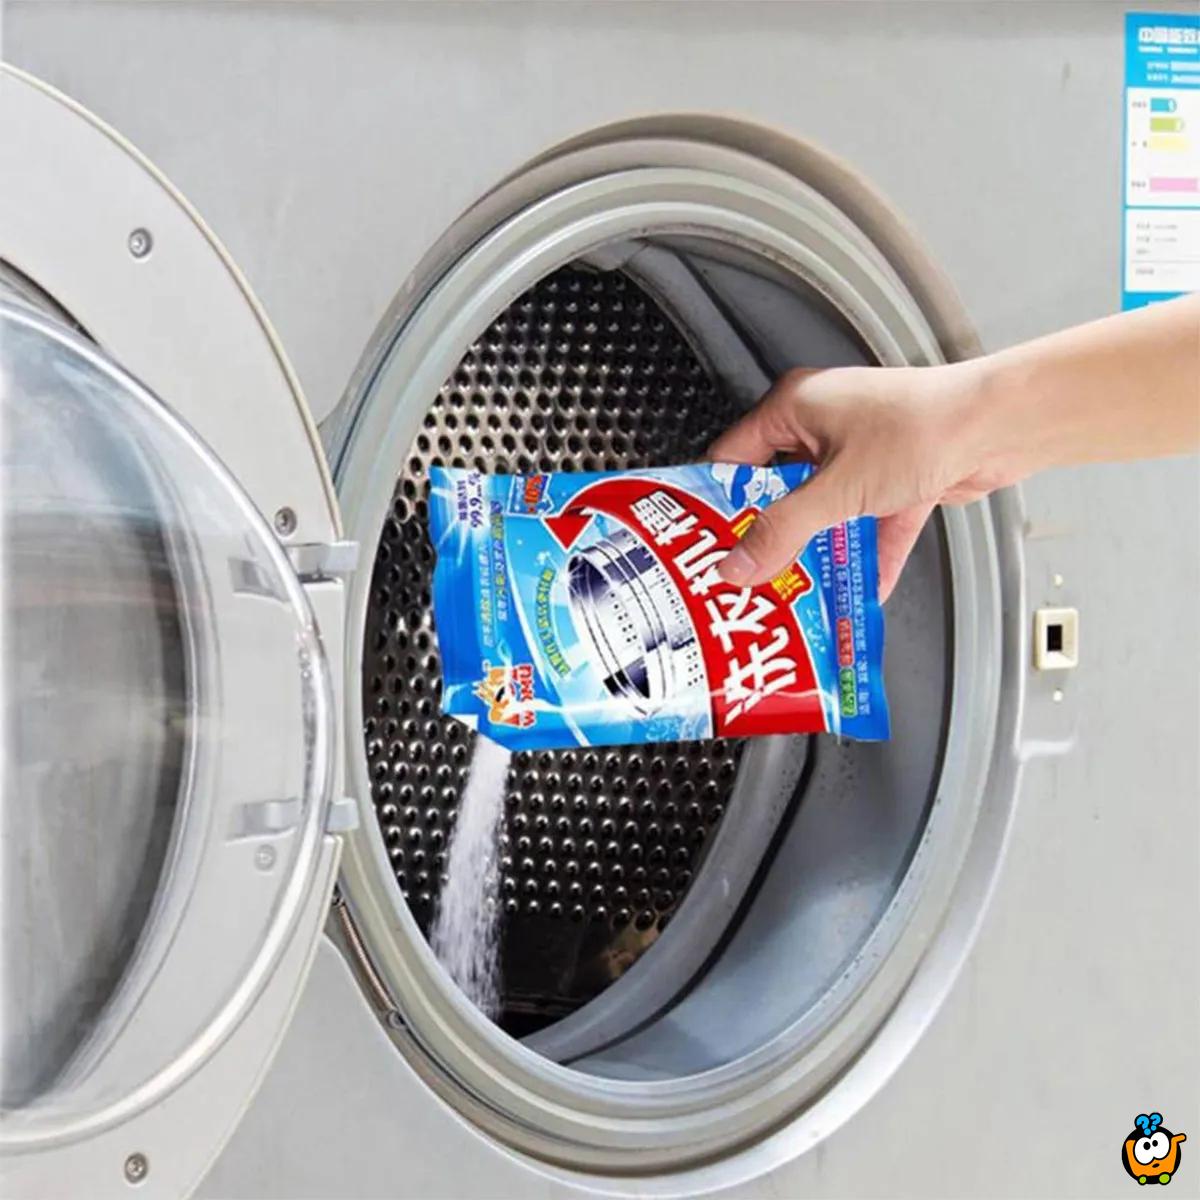 Washing Machine Cleaner - Prašak za čišćenje veš mašine